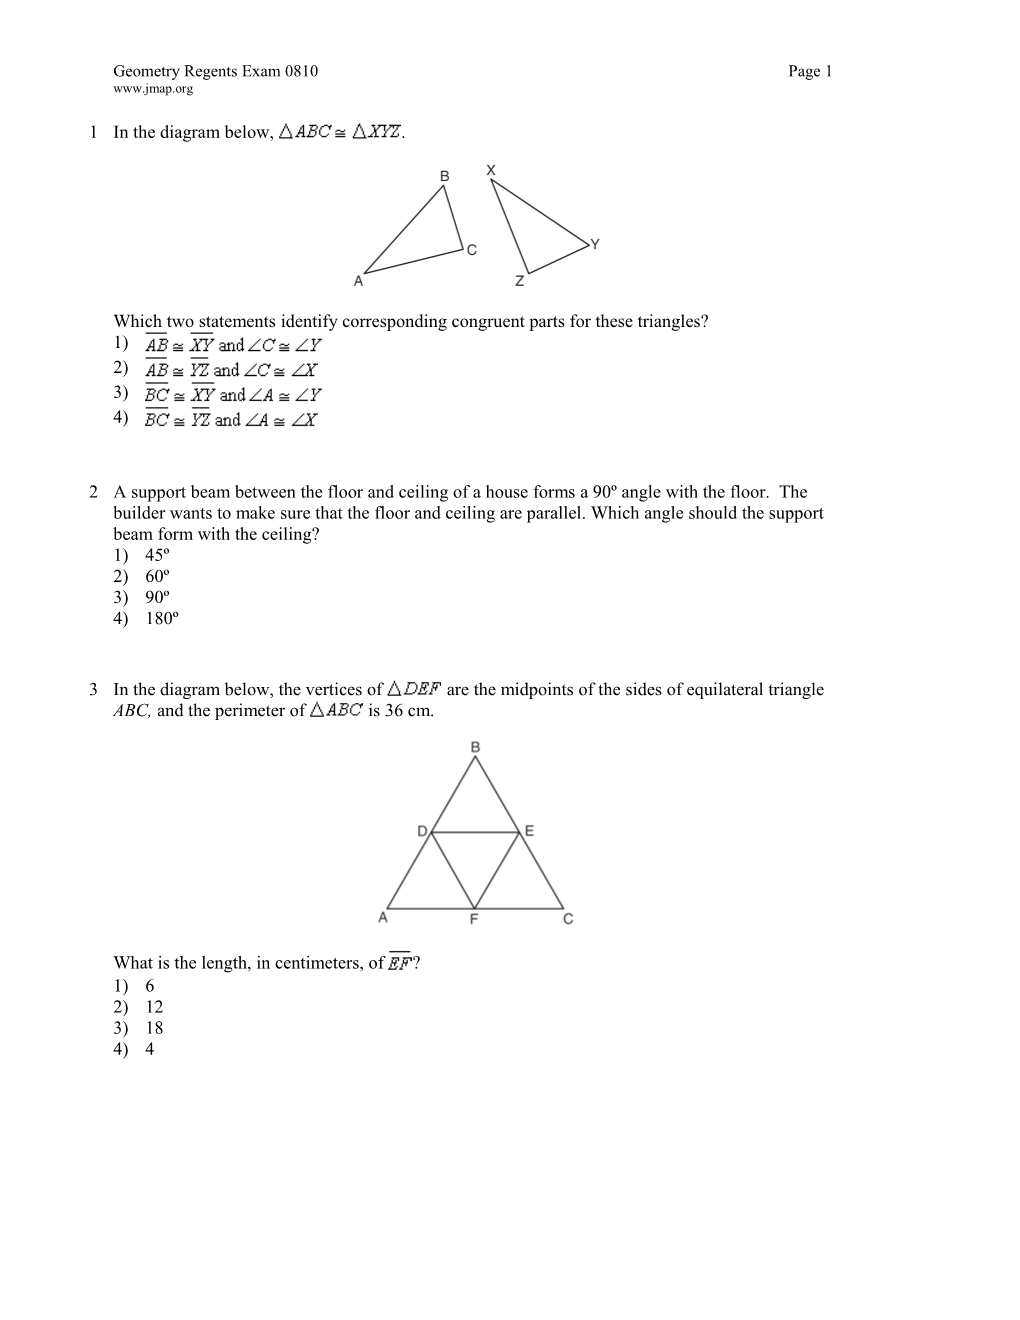 Geometry Regents Exam 0810 Page 2